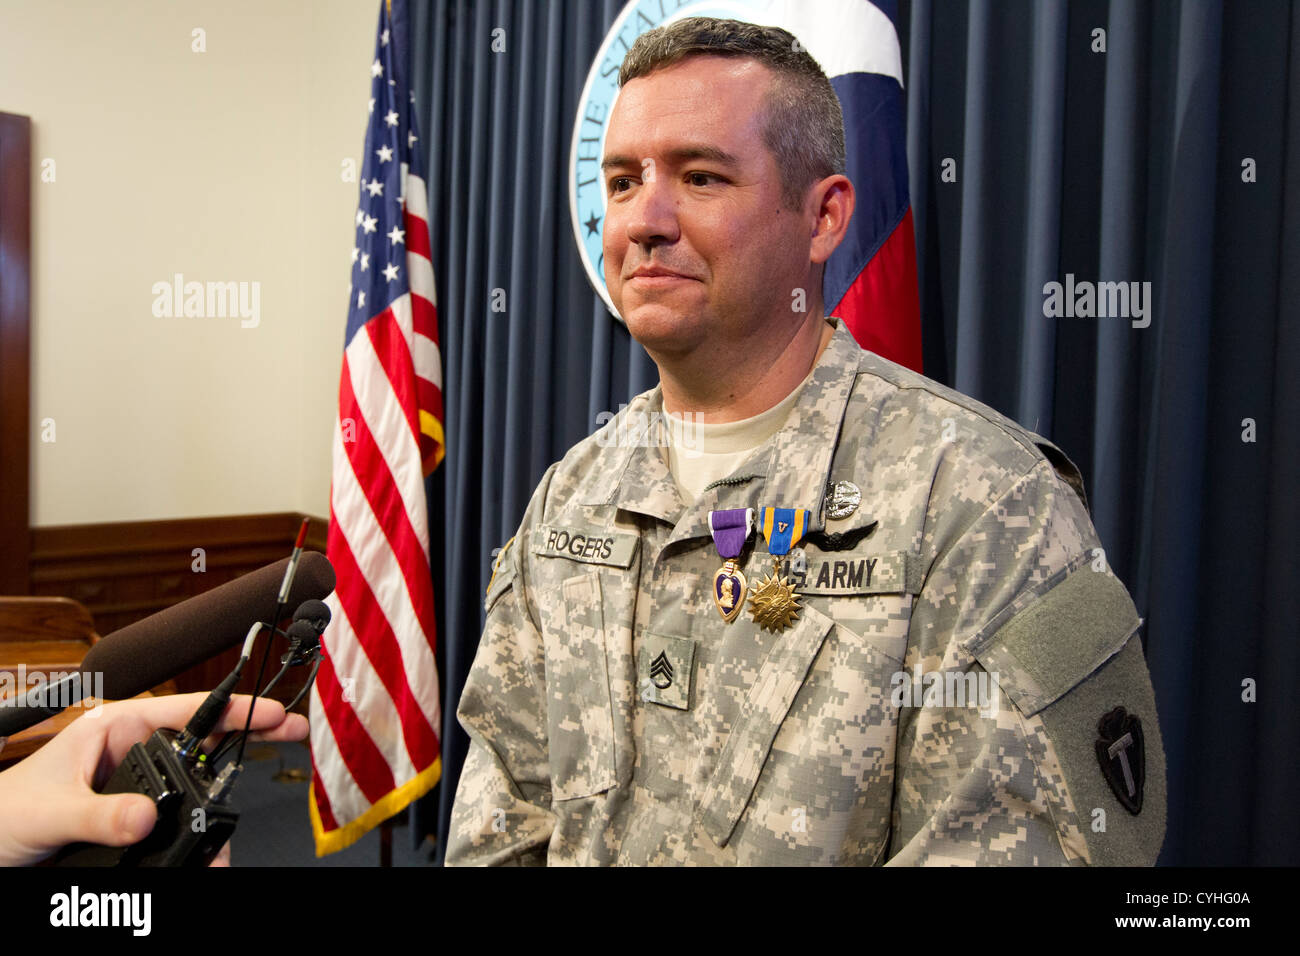 El sargento Patrick Rogers, habla con la prensa después de recibir el Corazón Púrpura del Gobernador de Texas Rick Perry en Austin Foto de stock